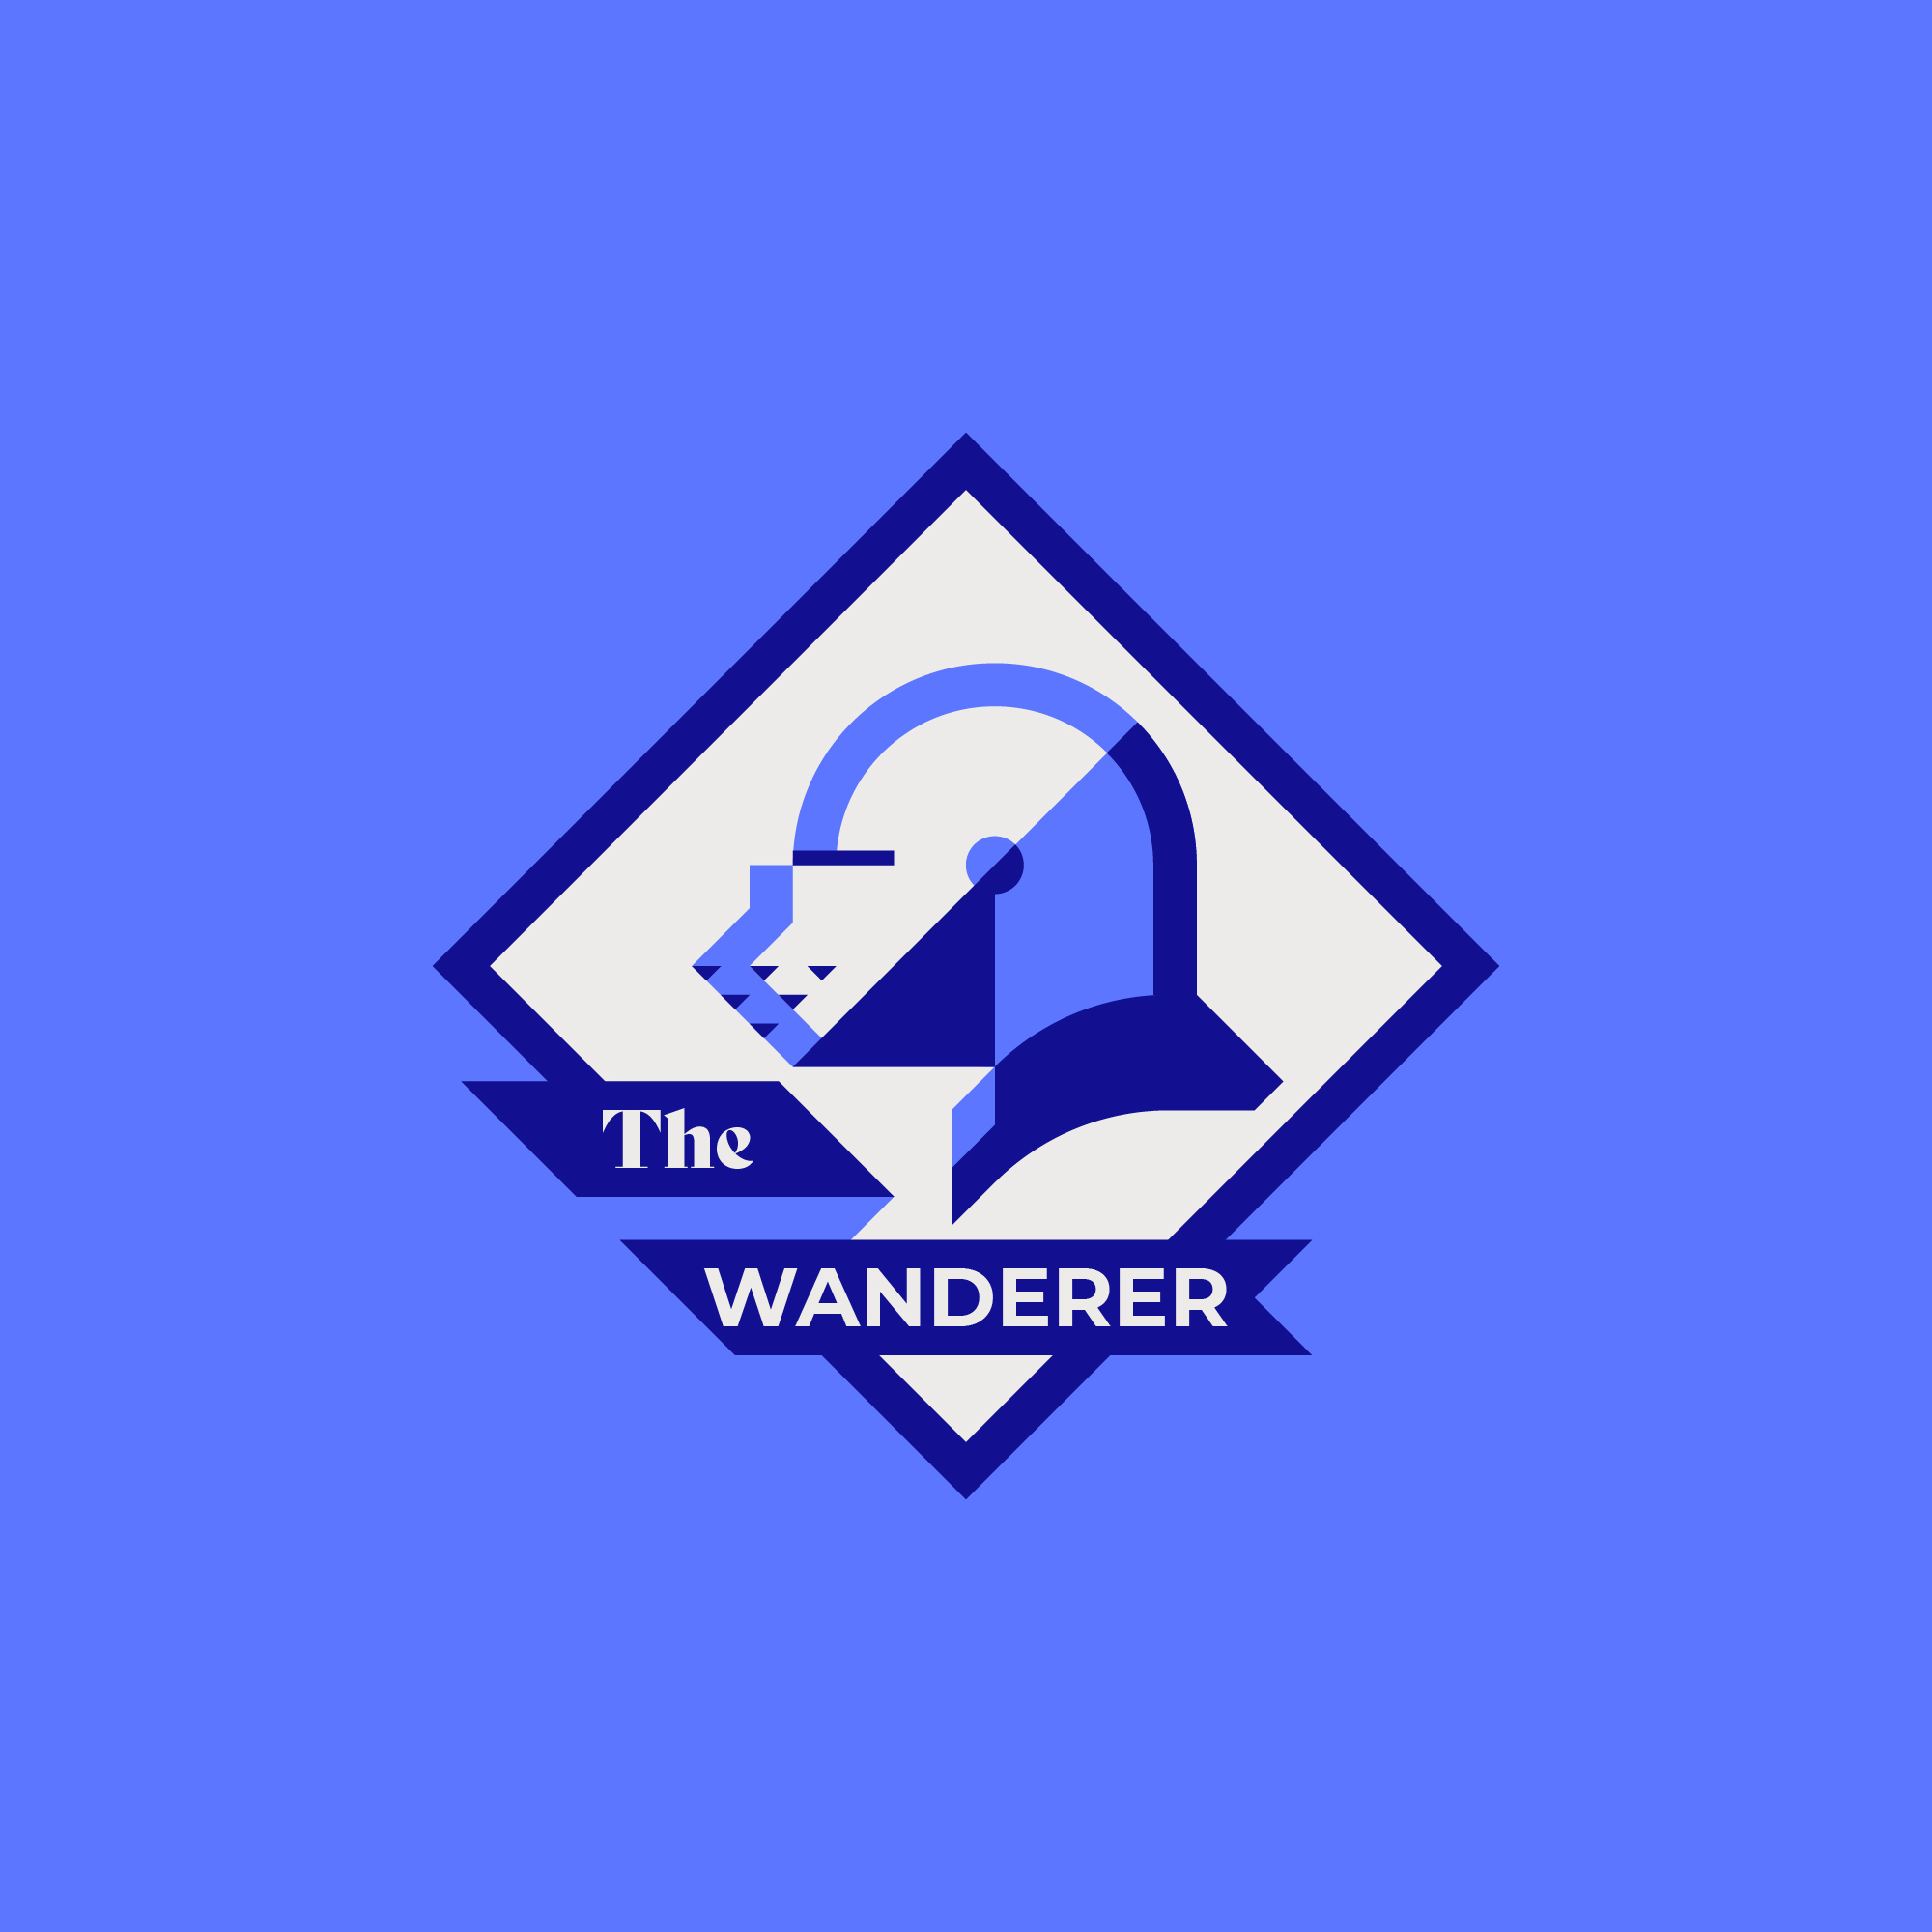 Le logo de 'The Wanderer' pour taverne, représente un chevalier errant à cheval.